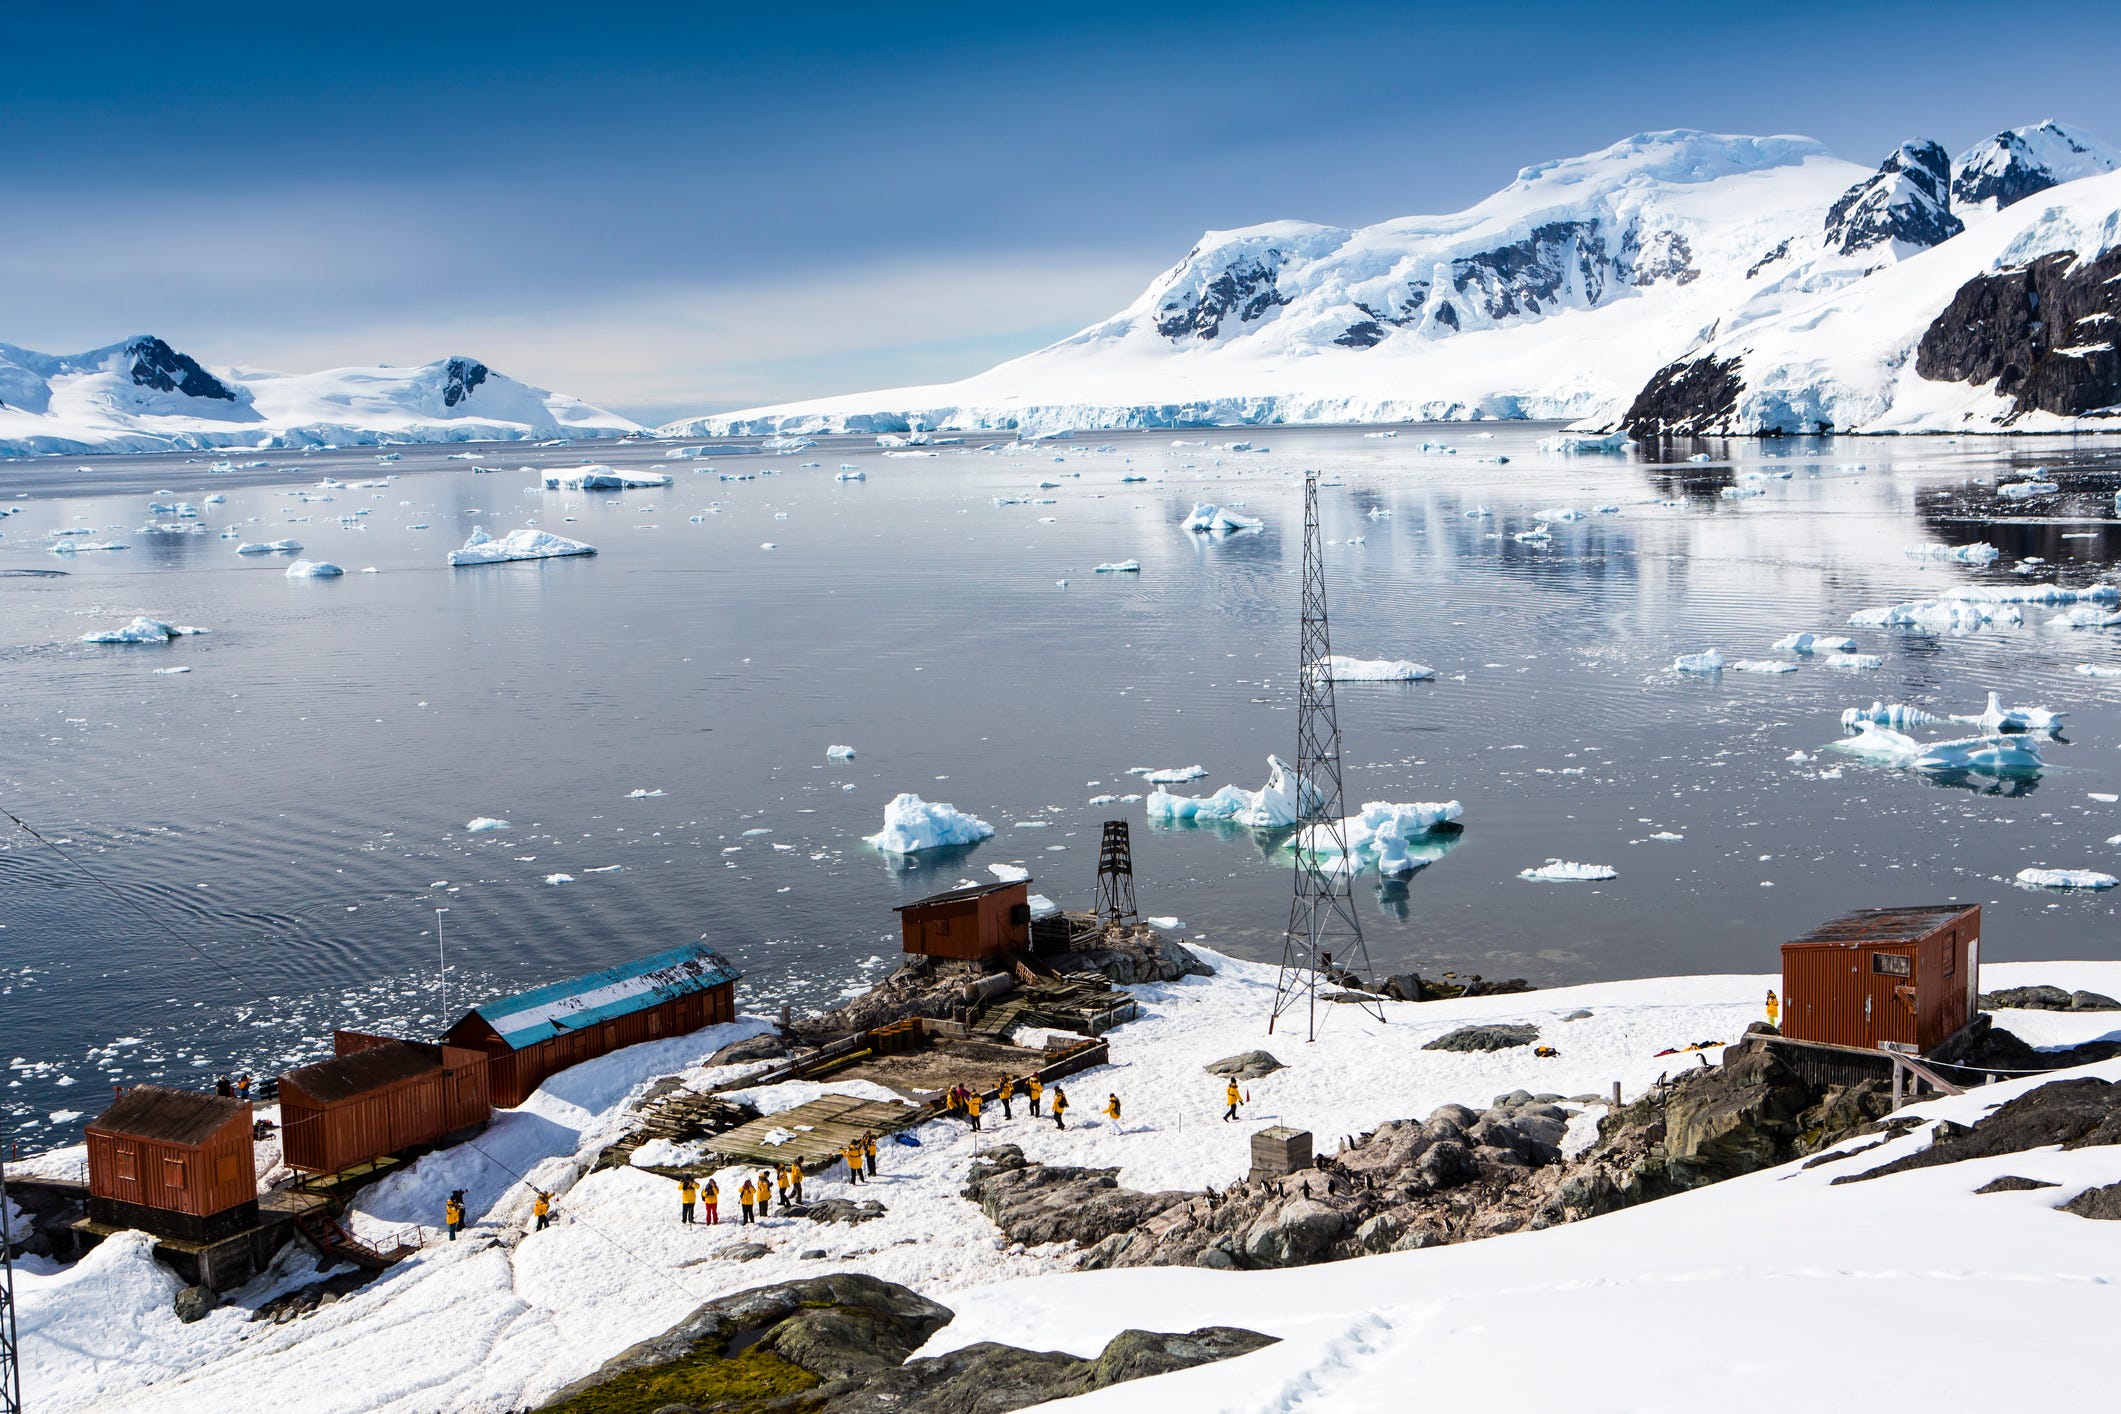 forscher in der antarktis entwickelten einen seltsamen akzent, nachdem sie sechs monate lang isoliert waren